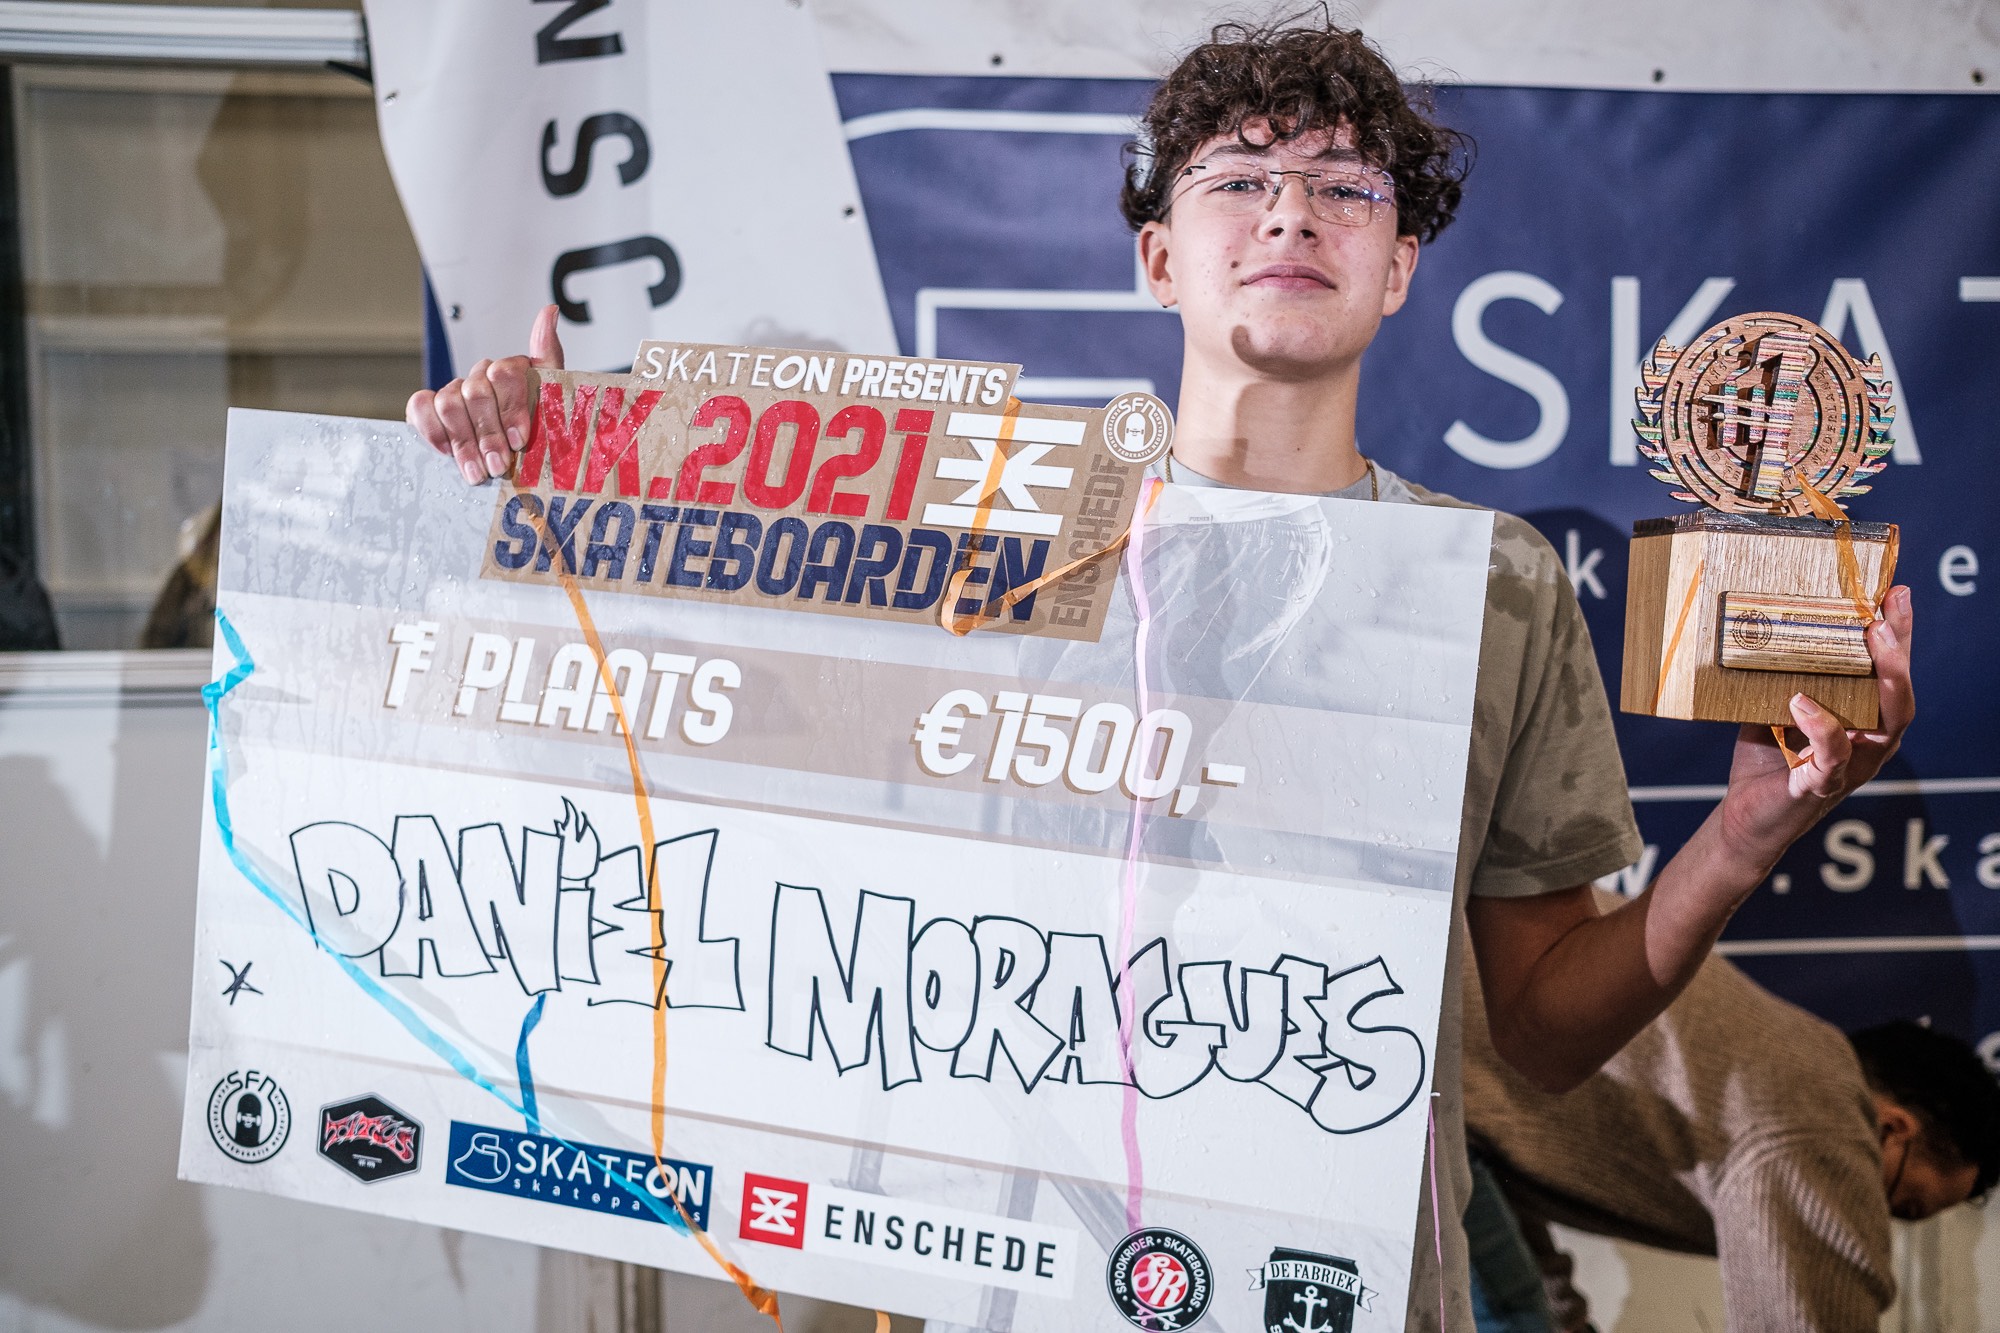 Vijftienjarige Daniel Moragues uit Groningen nieuwe Nederlands Kampioen  Skateboarden. Roos Zwetsloot (21) uit Zeist prolongeert titel bij de vrouwen.